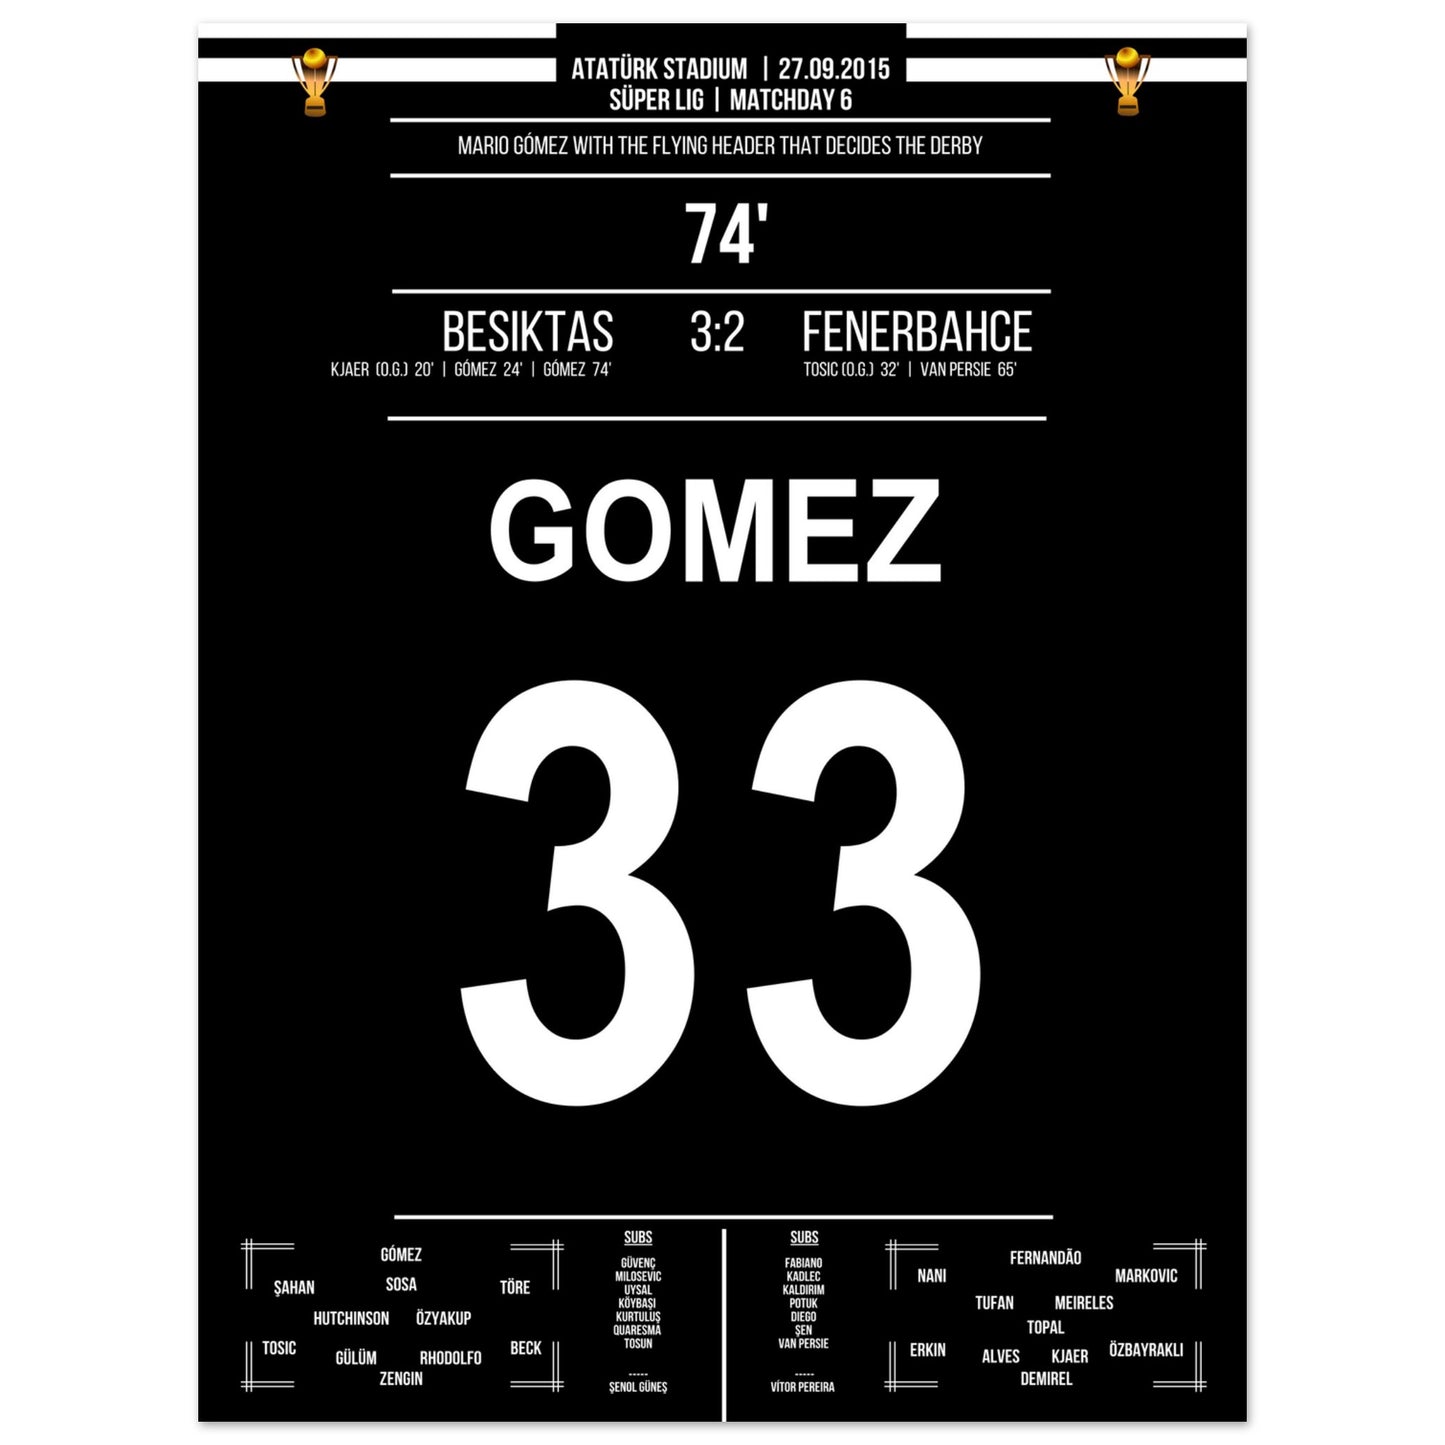 Mario Gomez Flugkopfball beim Derbysieg gegen Fenerbahce 2015 30x40-cm-12x16-Ohne-Rahmen